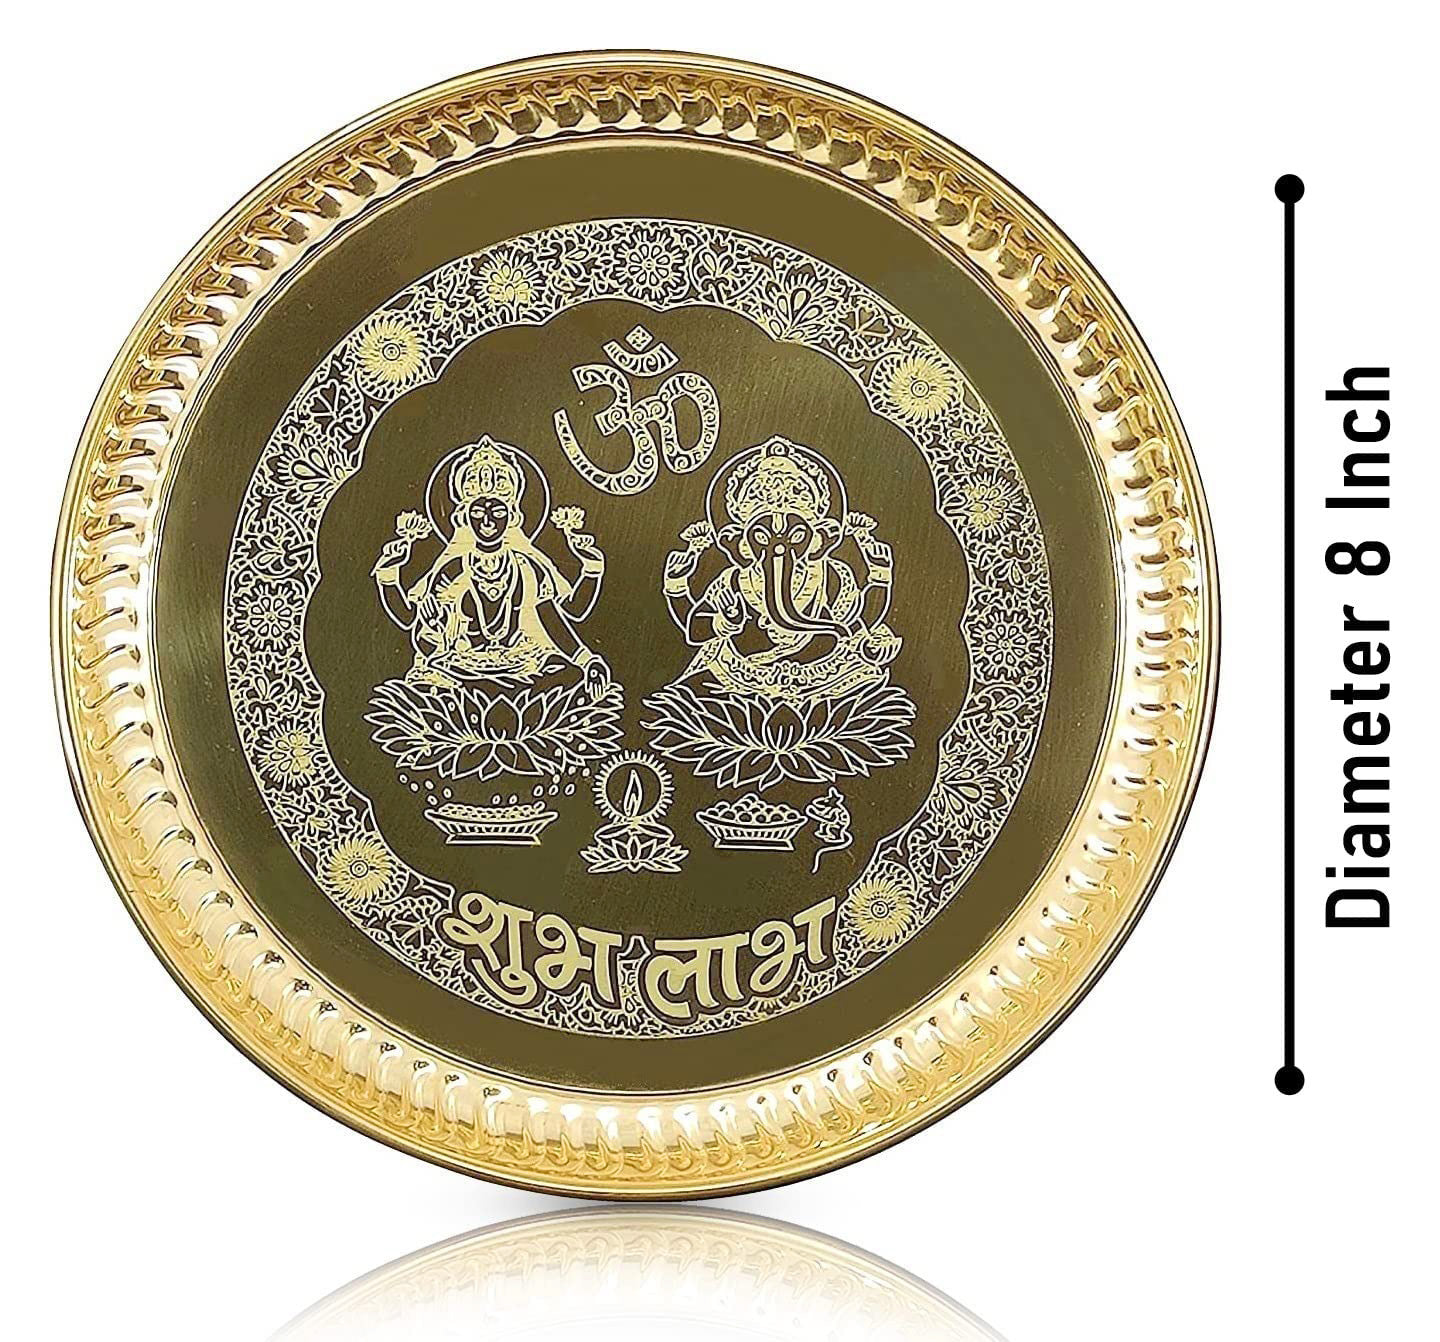 বেঙ্গল ব্রাস পূজার থালি 8 ইঞ্চি আনুষাঙ্গিক সহ গণেশ লক্ষ্মী ডিজাইনের পূজা সেট বিবাহের ফেরত উপহার সামগ্রী